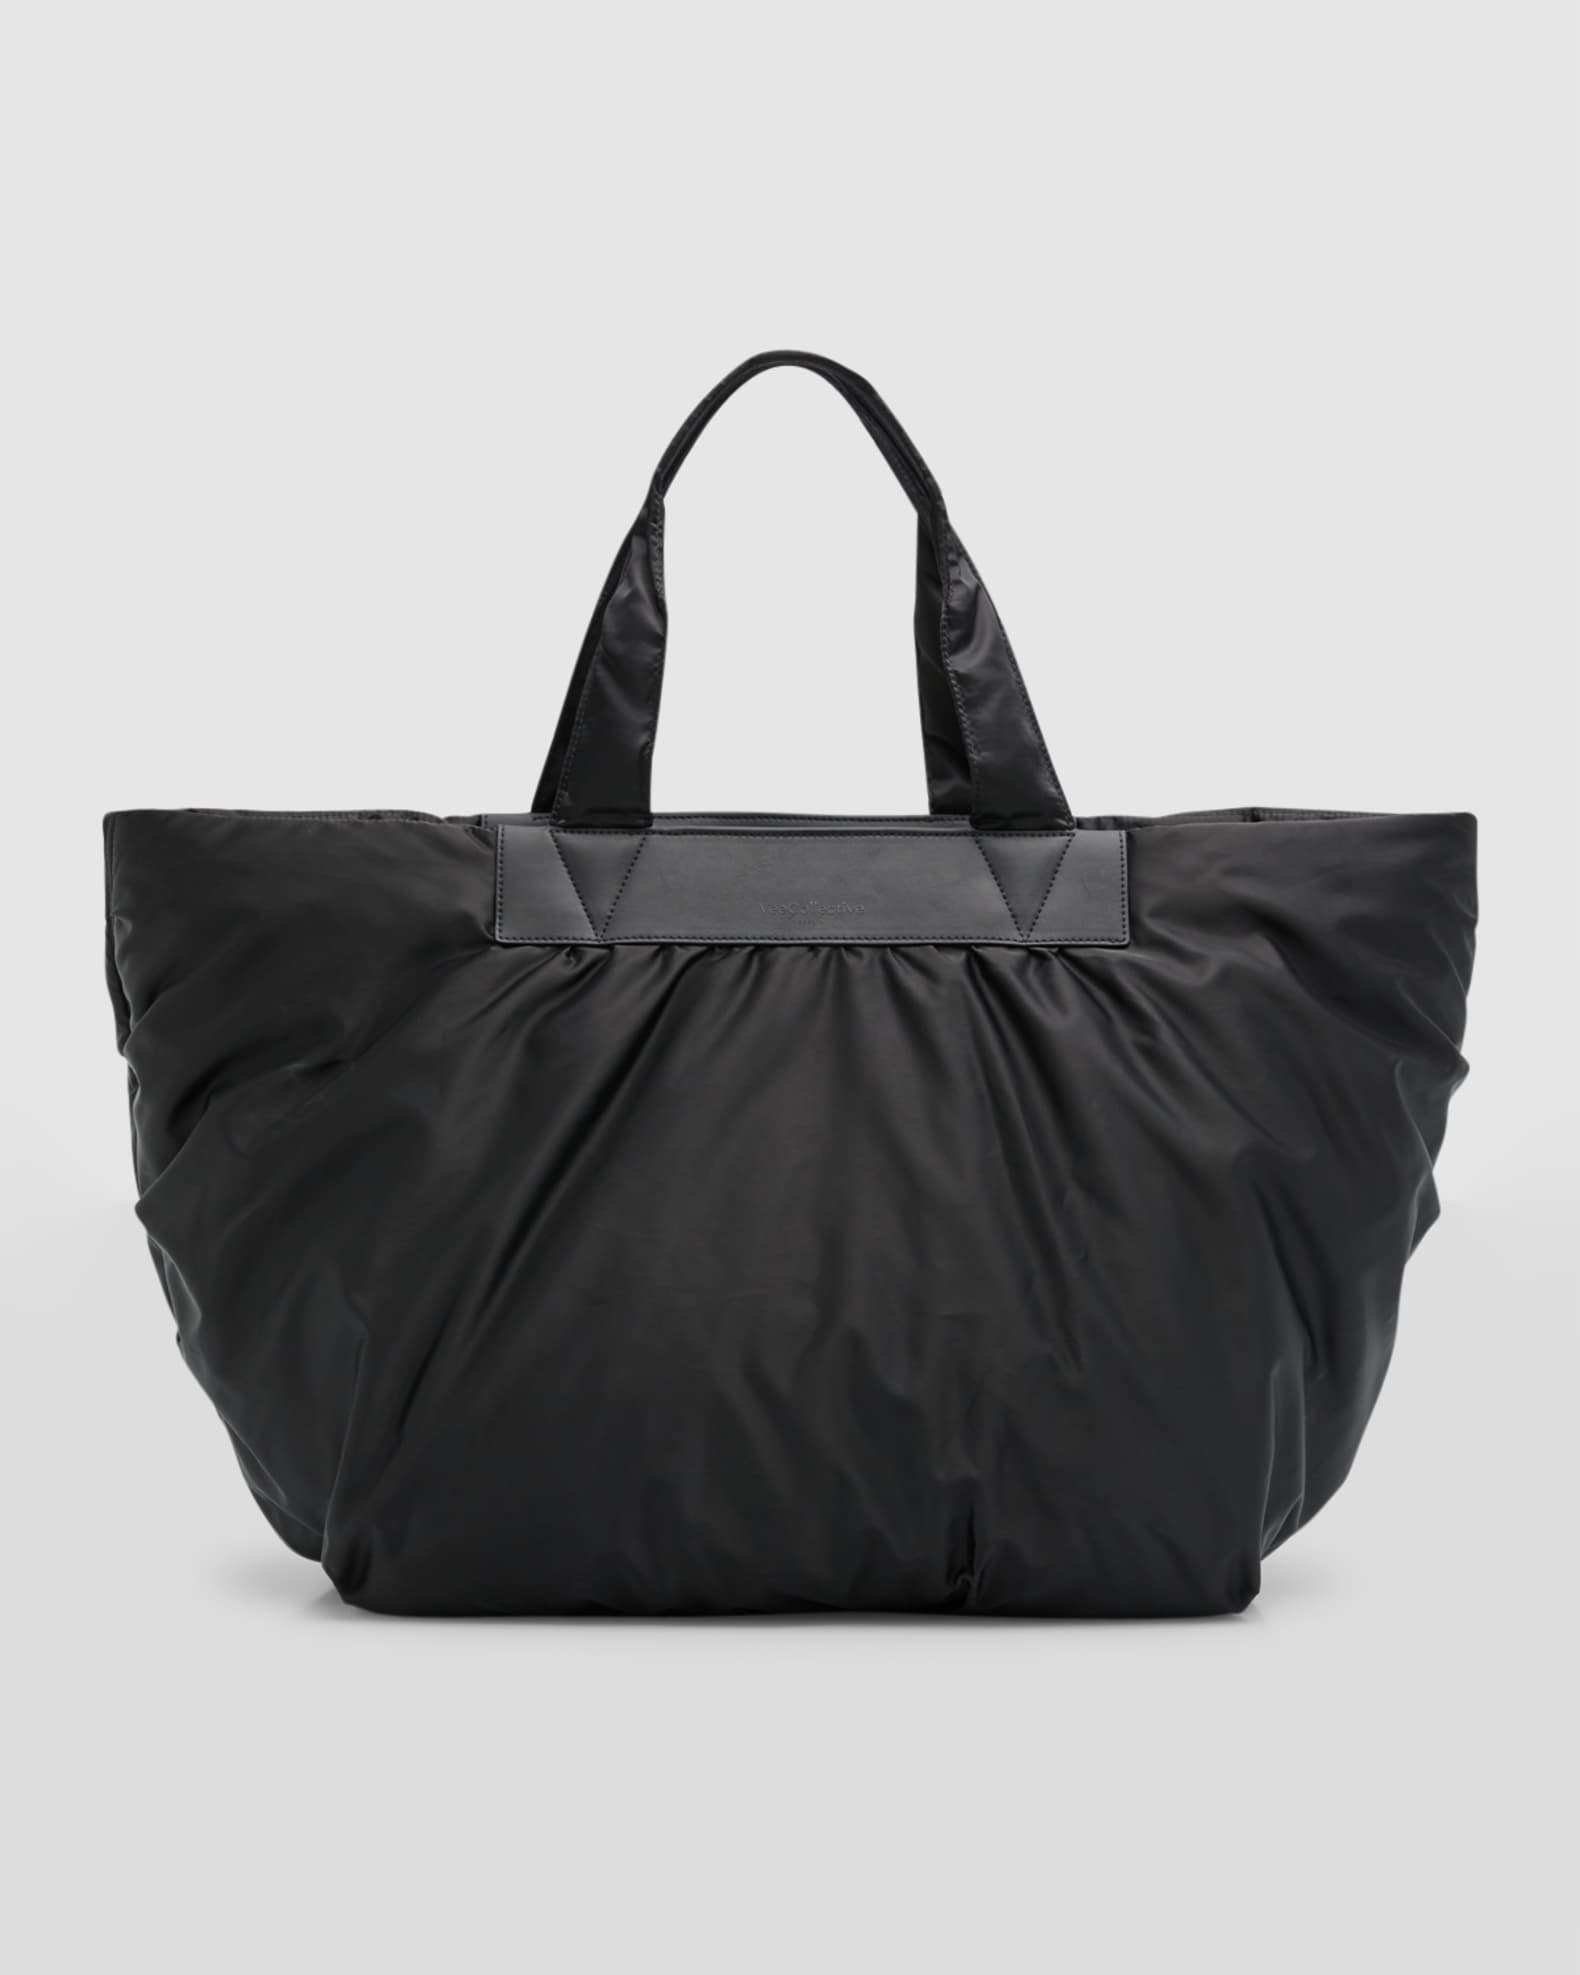 VeeCollective Caba Water-Resistant Nylon Weekender Bag | Neiman Marcus